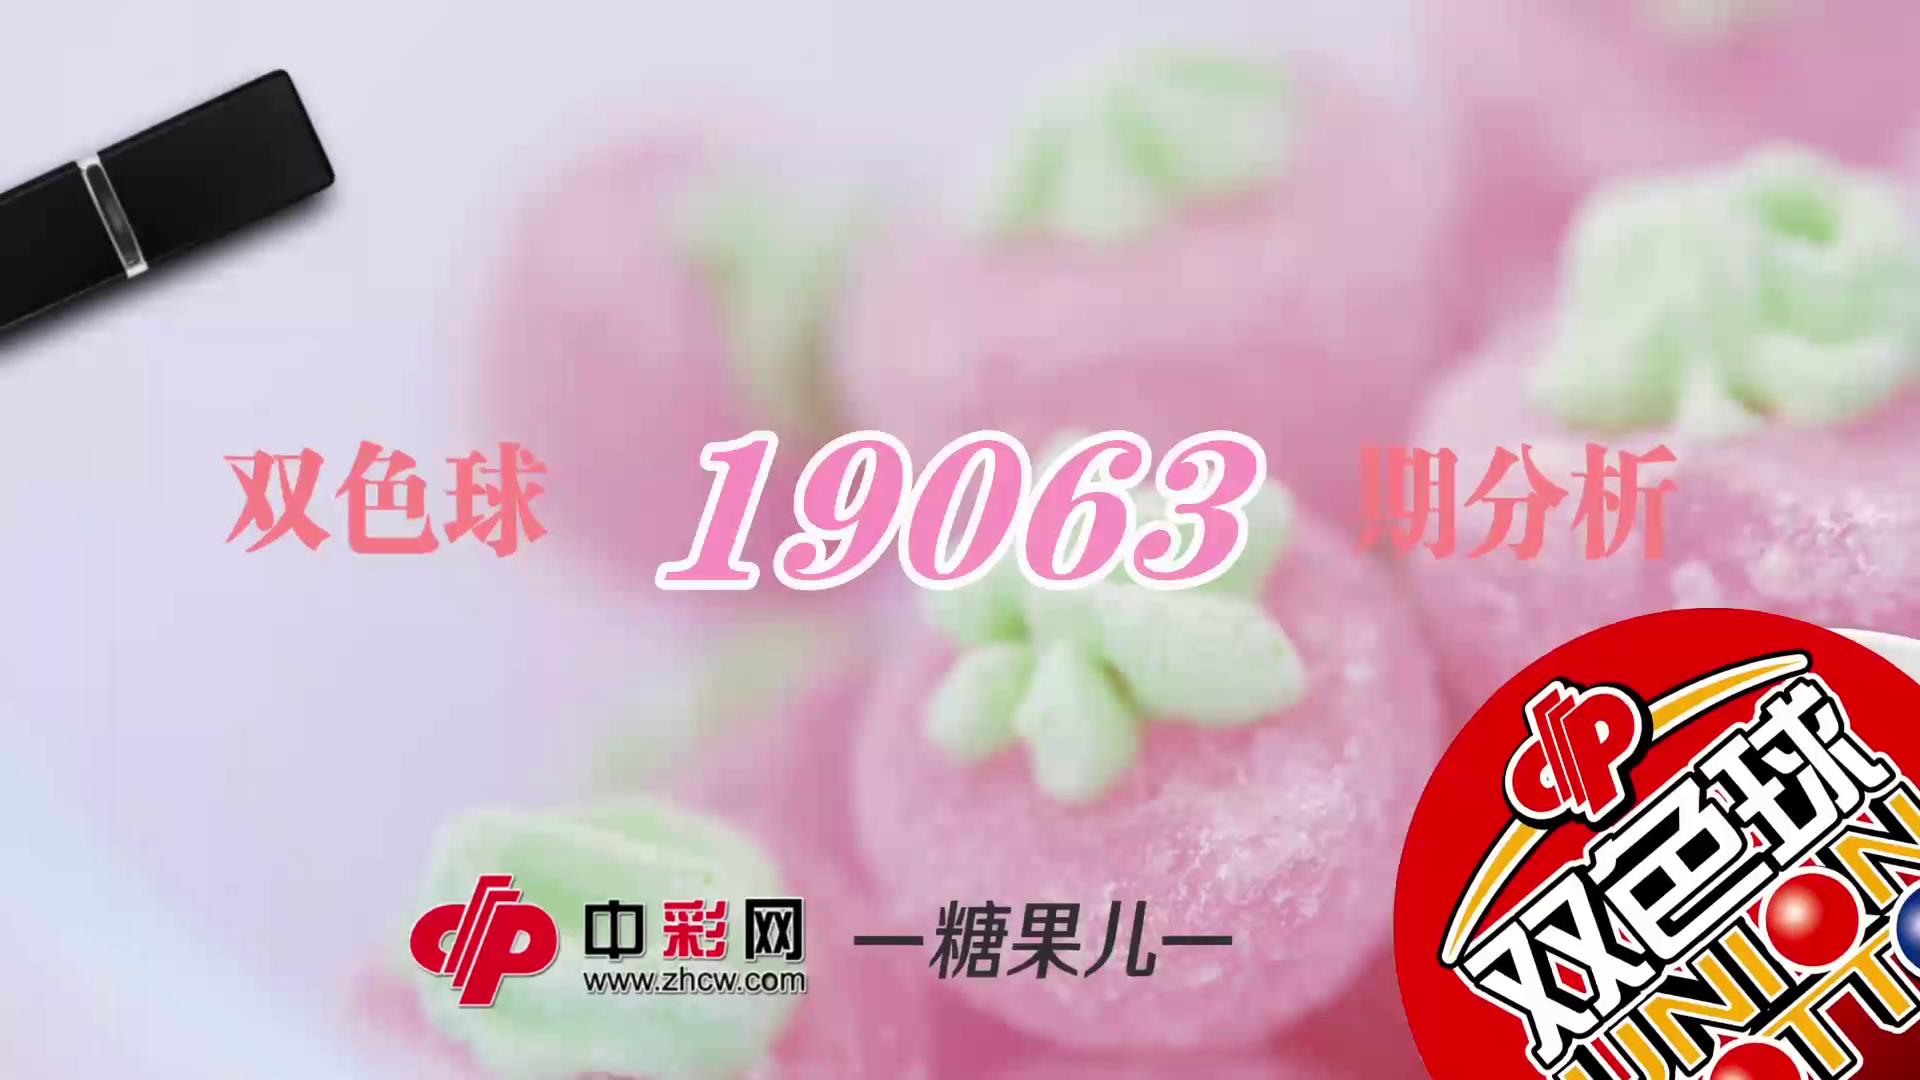 【中彩视频】糖果儿双色球第19063期